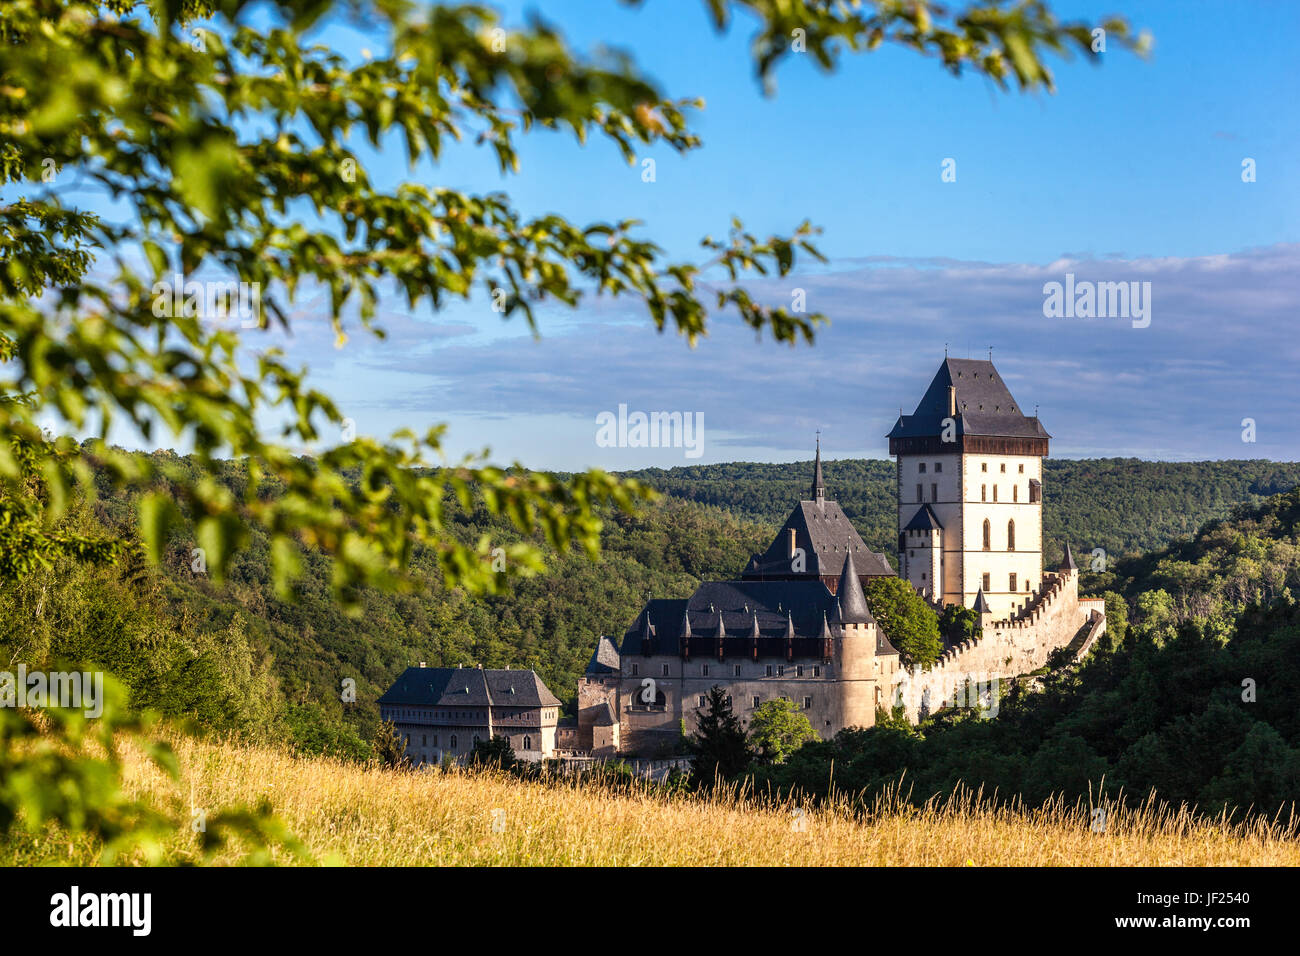 Châteaux tchèques château de Karlstejn République tchèque vue sur la campagne paysage, château royal construit au milieu de forêts profondes Banque D'Images